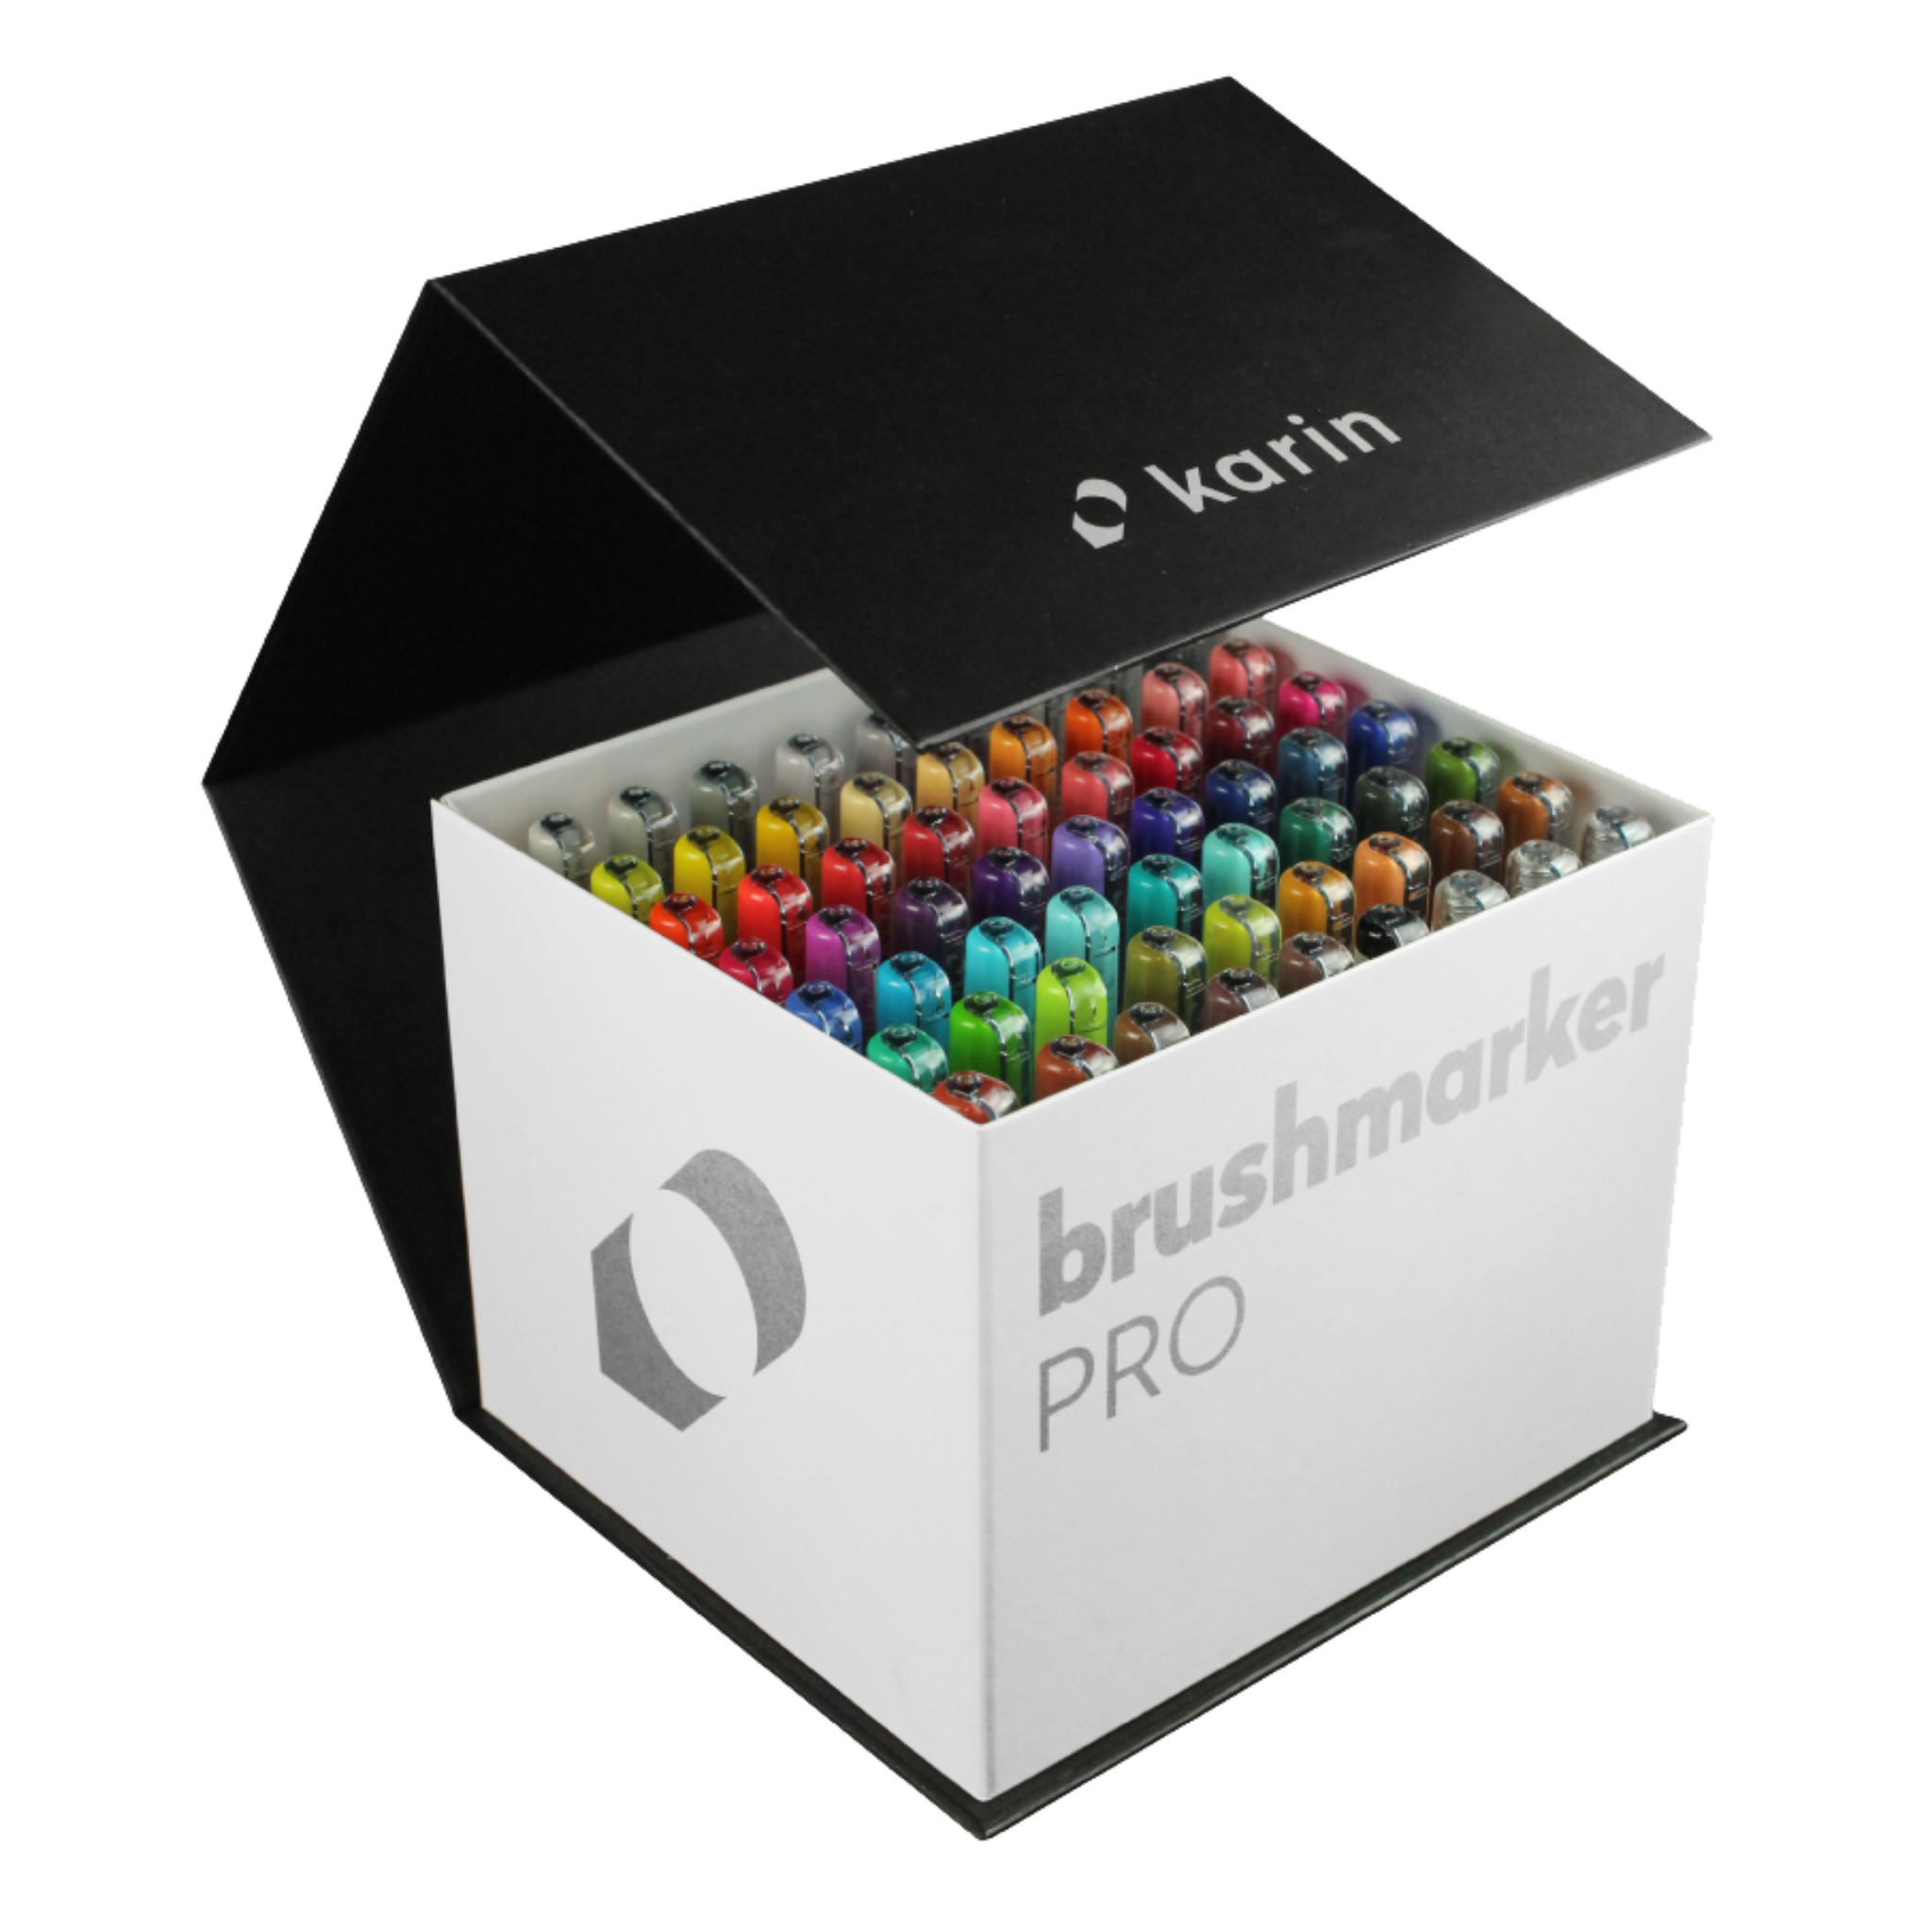 BrushmarkerPRO MegaBox - 60 colours + 3 blenders set - Paper Kooka